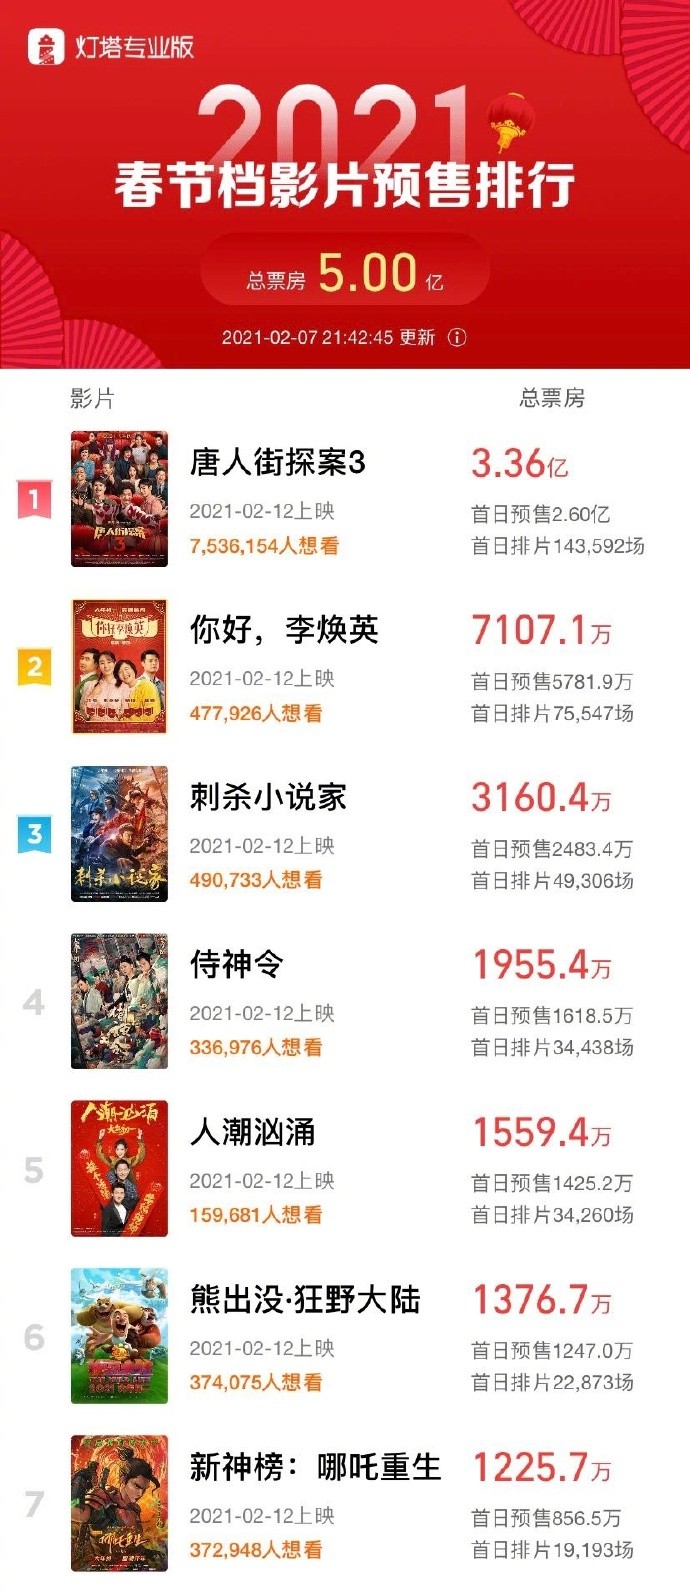 春节档影戏预卖票房破5亿 唐探3超3亿强势发跑